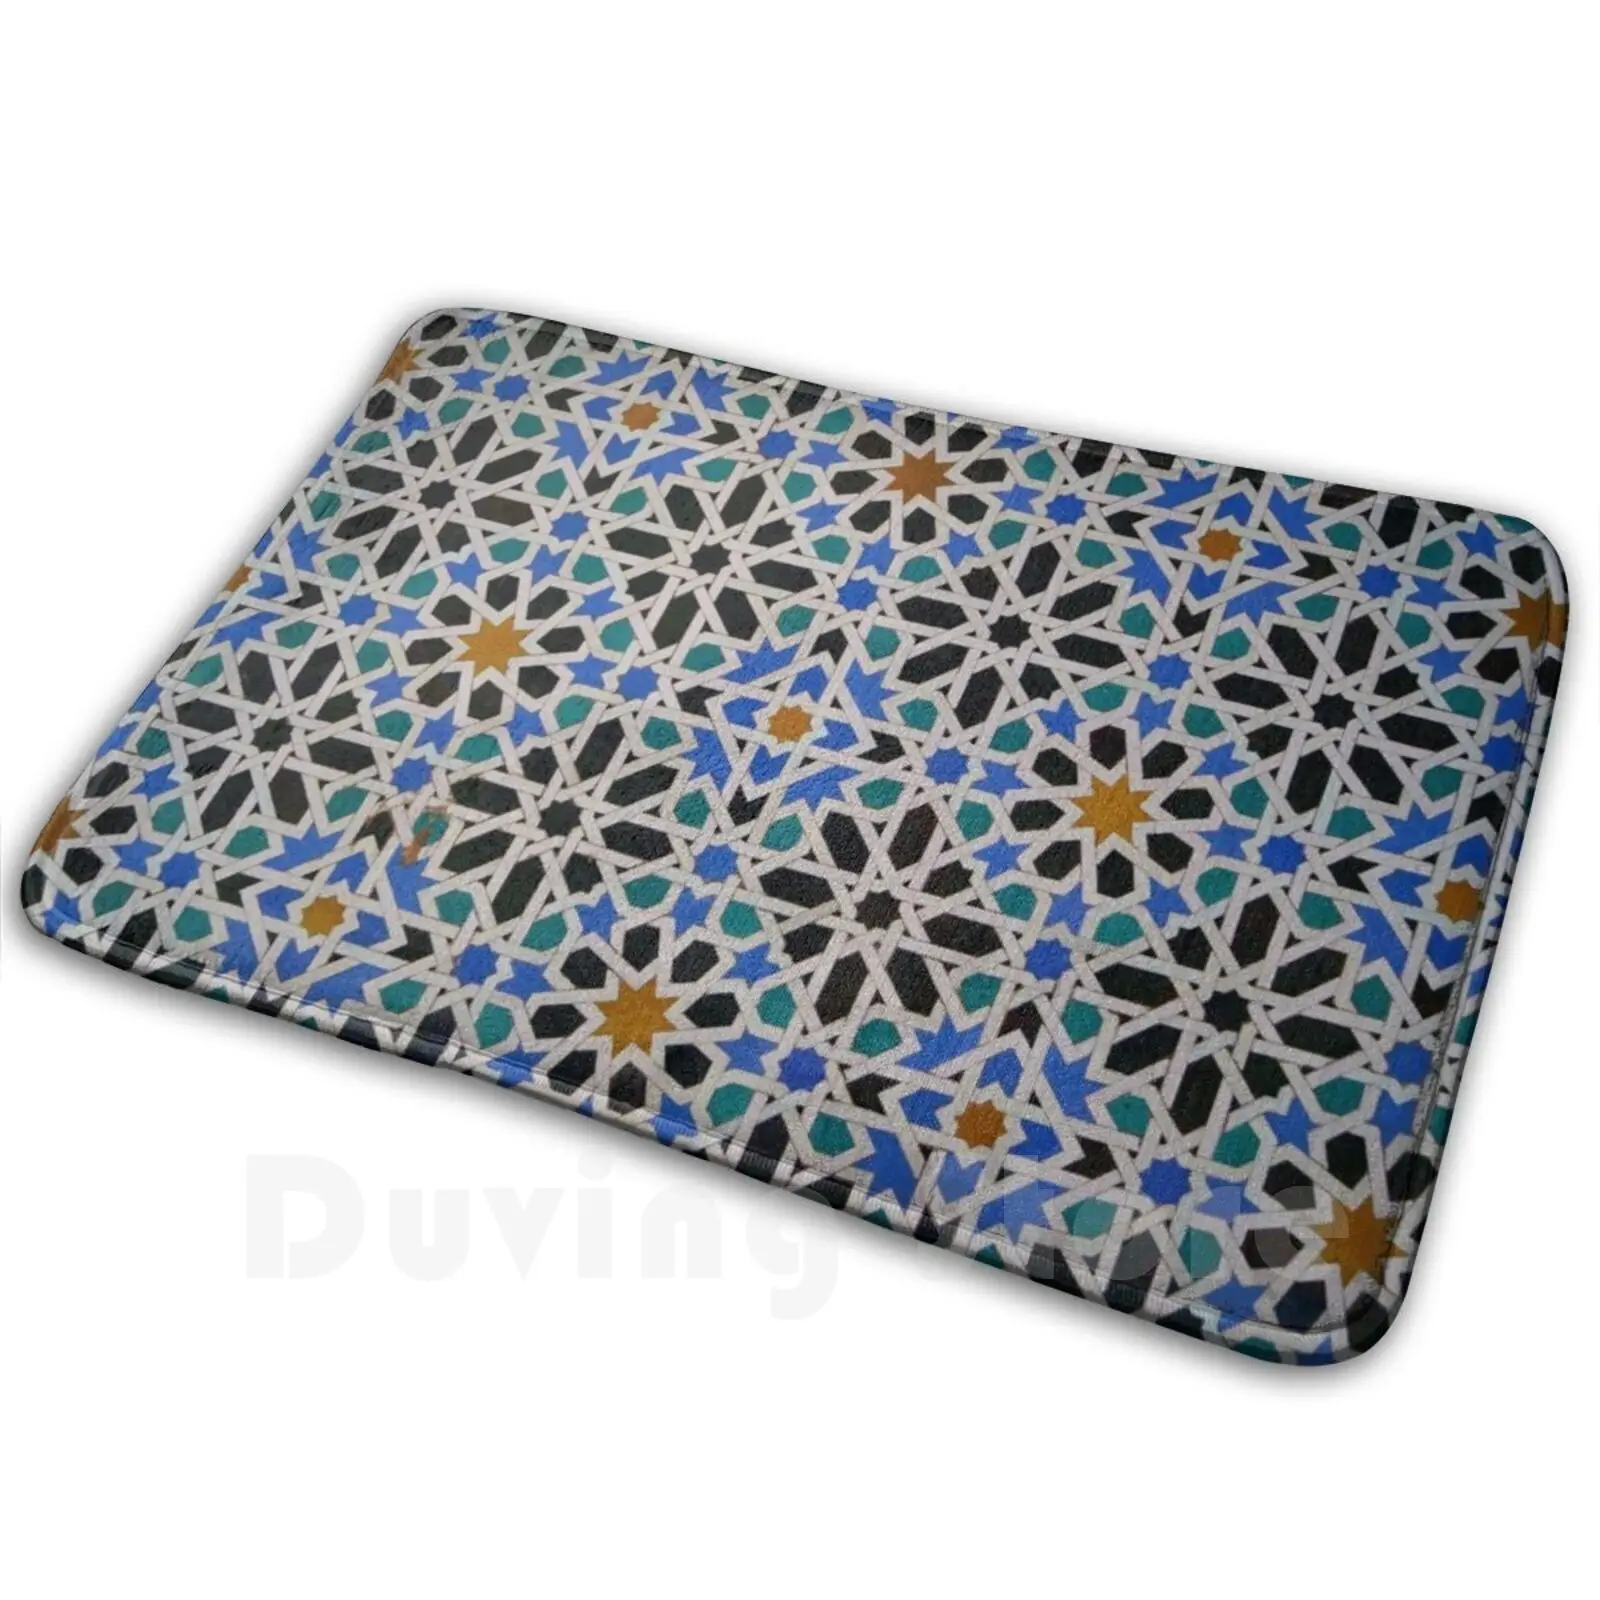 

Севилья ислам ИС узор плитки 2 коврик подушка мягкая Севилья испанская плитка мусульманский ИС узор ислам